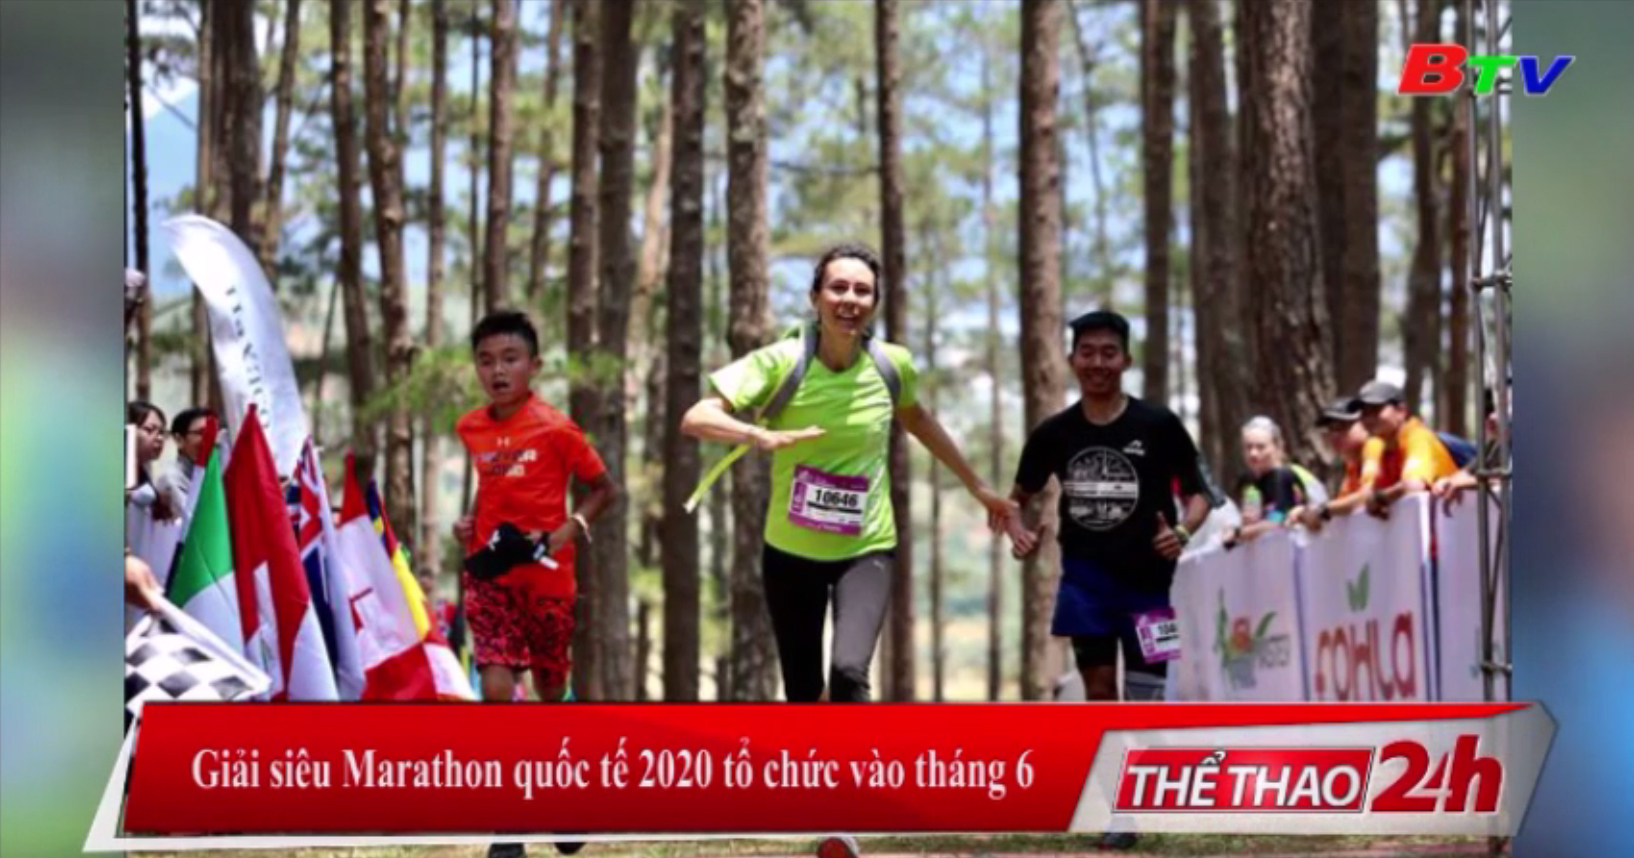 Giải siêu Marathon quốc tế 2020 tổ chức vào tháng 6